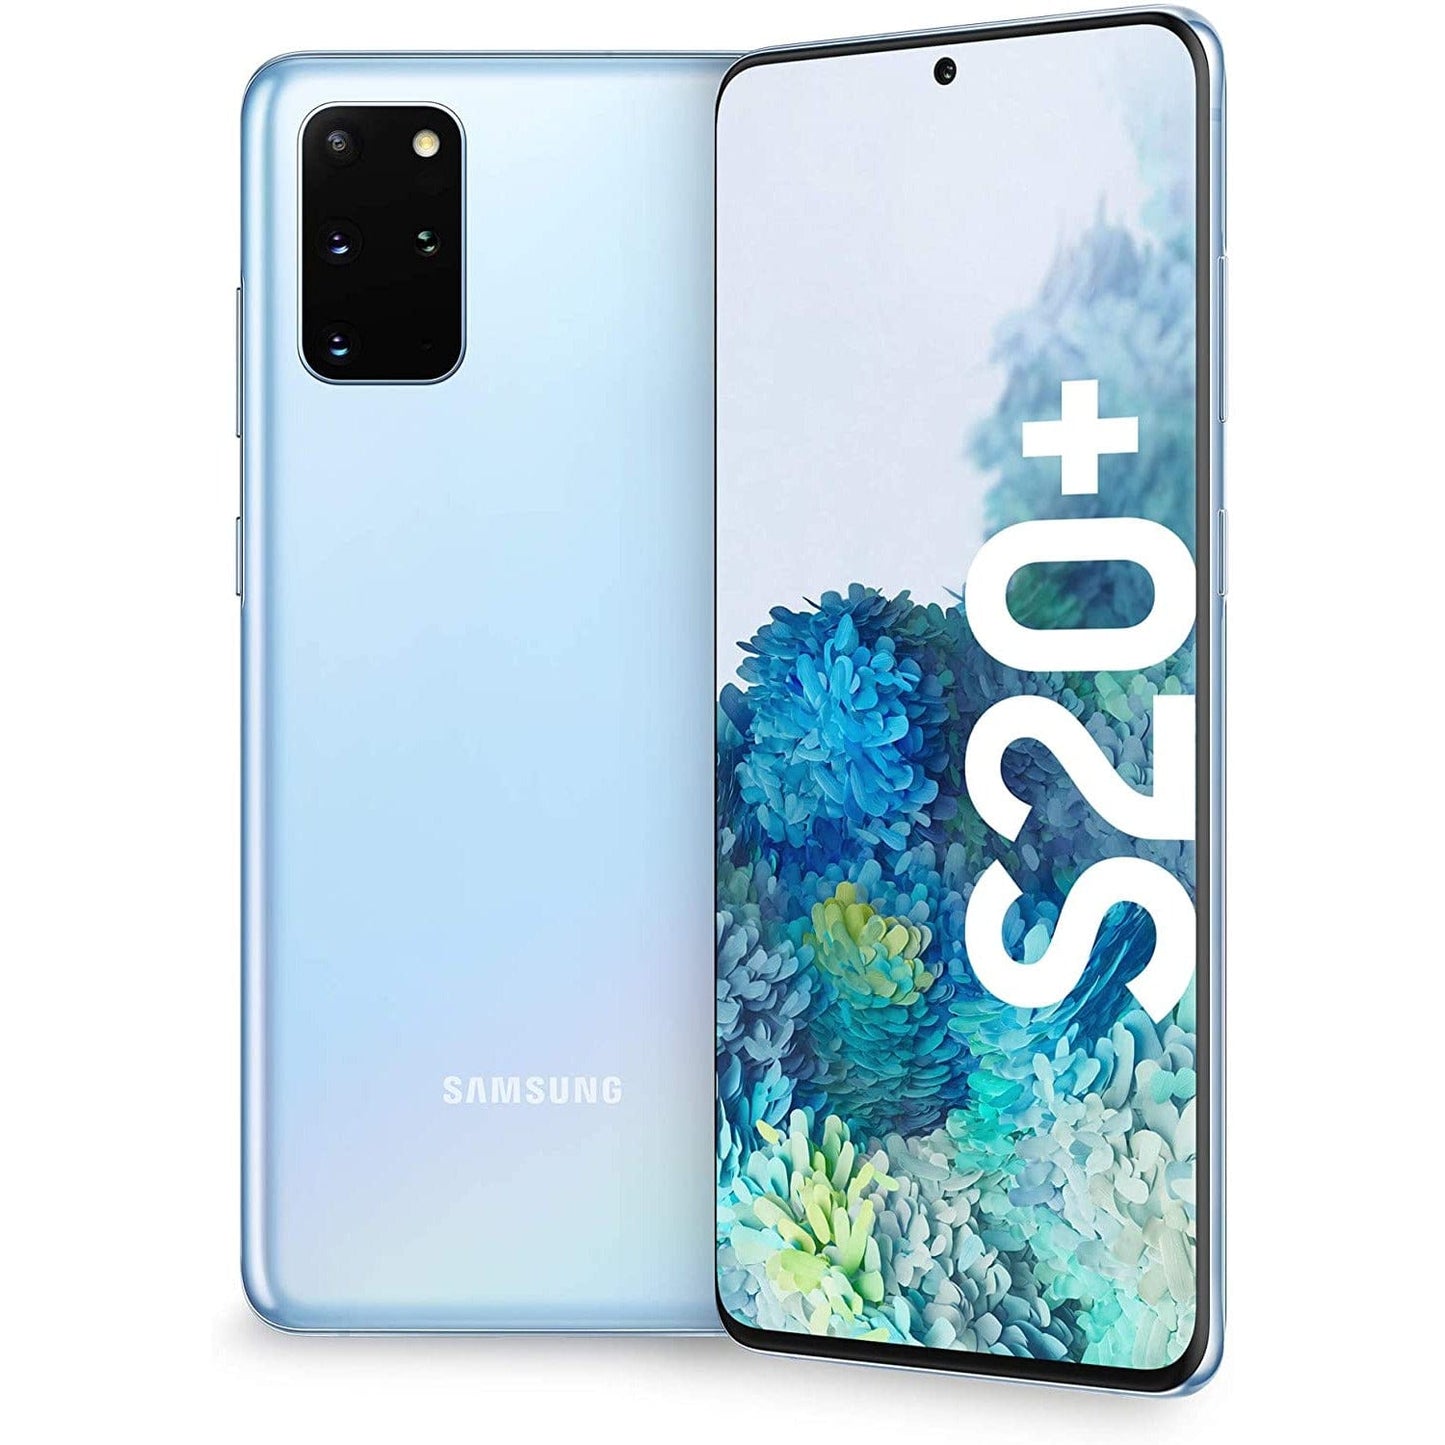 Samsung Galaxy S20+ - 128 GB - Cosmic Gray - Verizon Unlocked